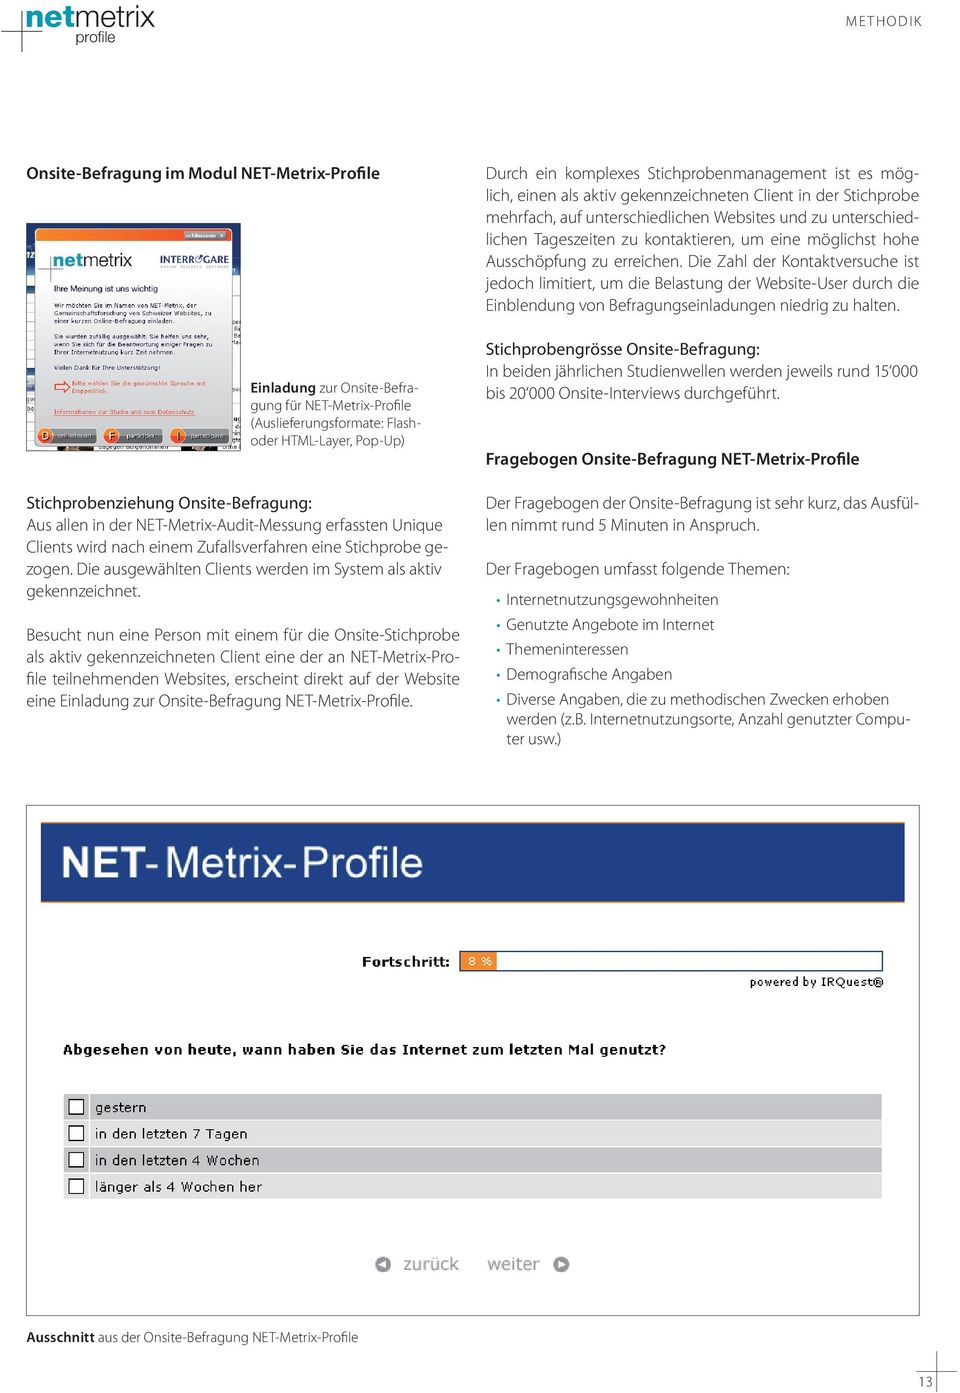 Besucht nun eine Person mit einem für die Onsite-Stichprobe als aktiv gekennzeichneten Client eine der an NET-Metrix-Profile teilnehmenden Websites, erscheint direkt auf der Website eine Einladung